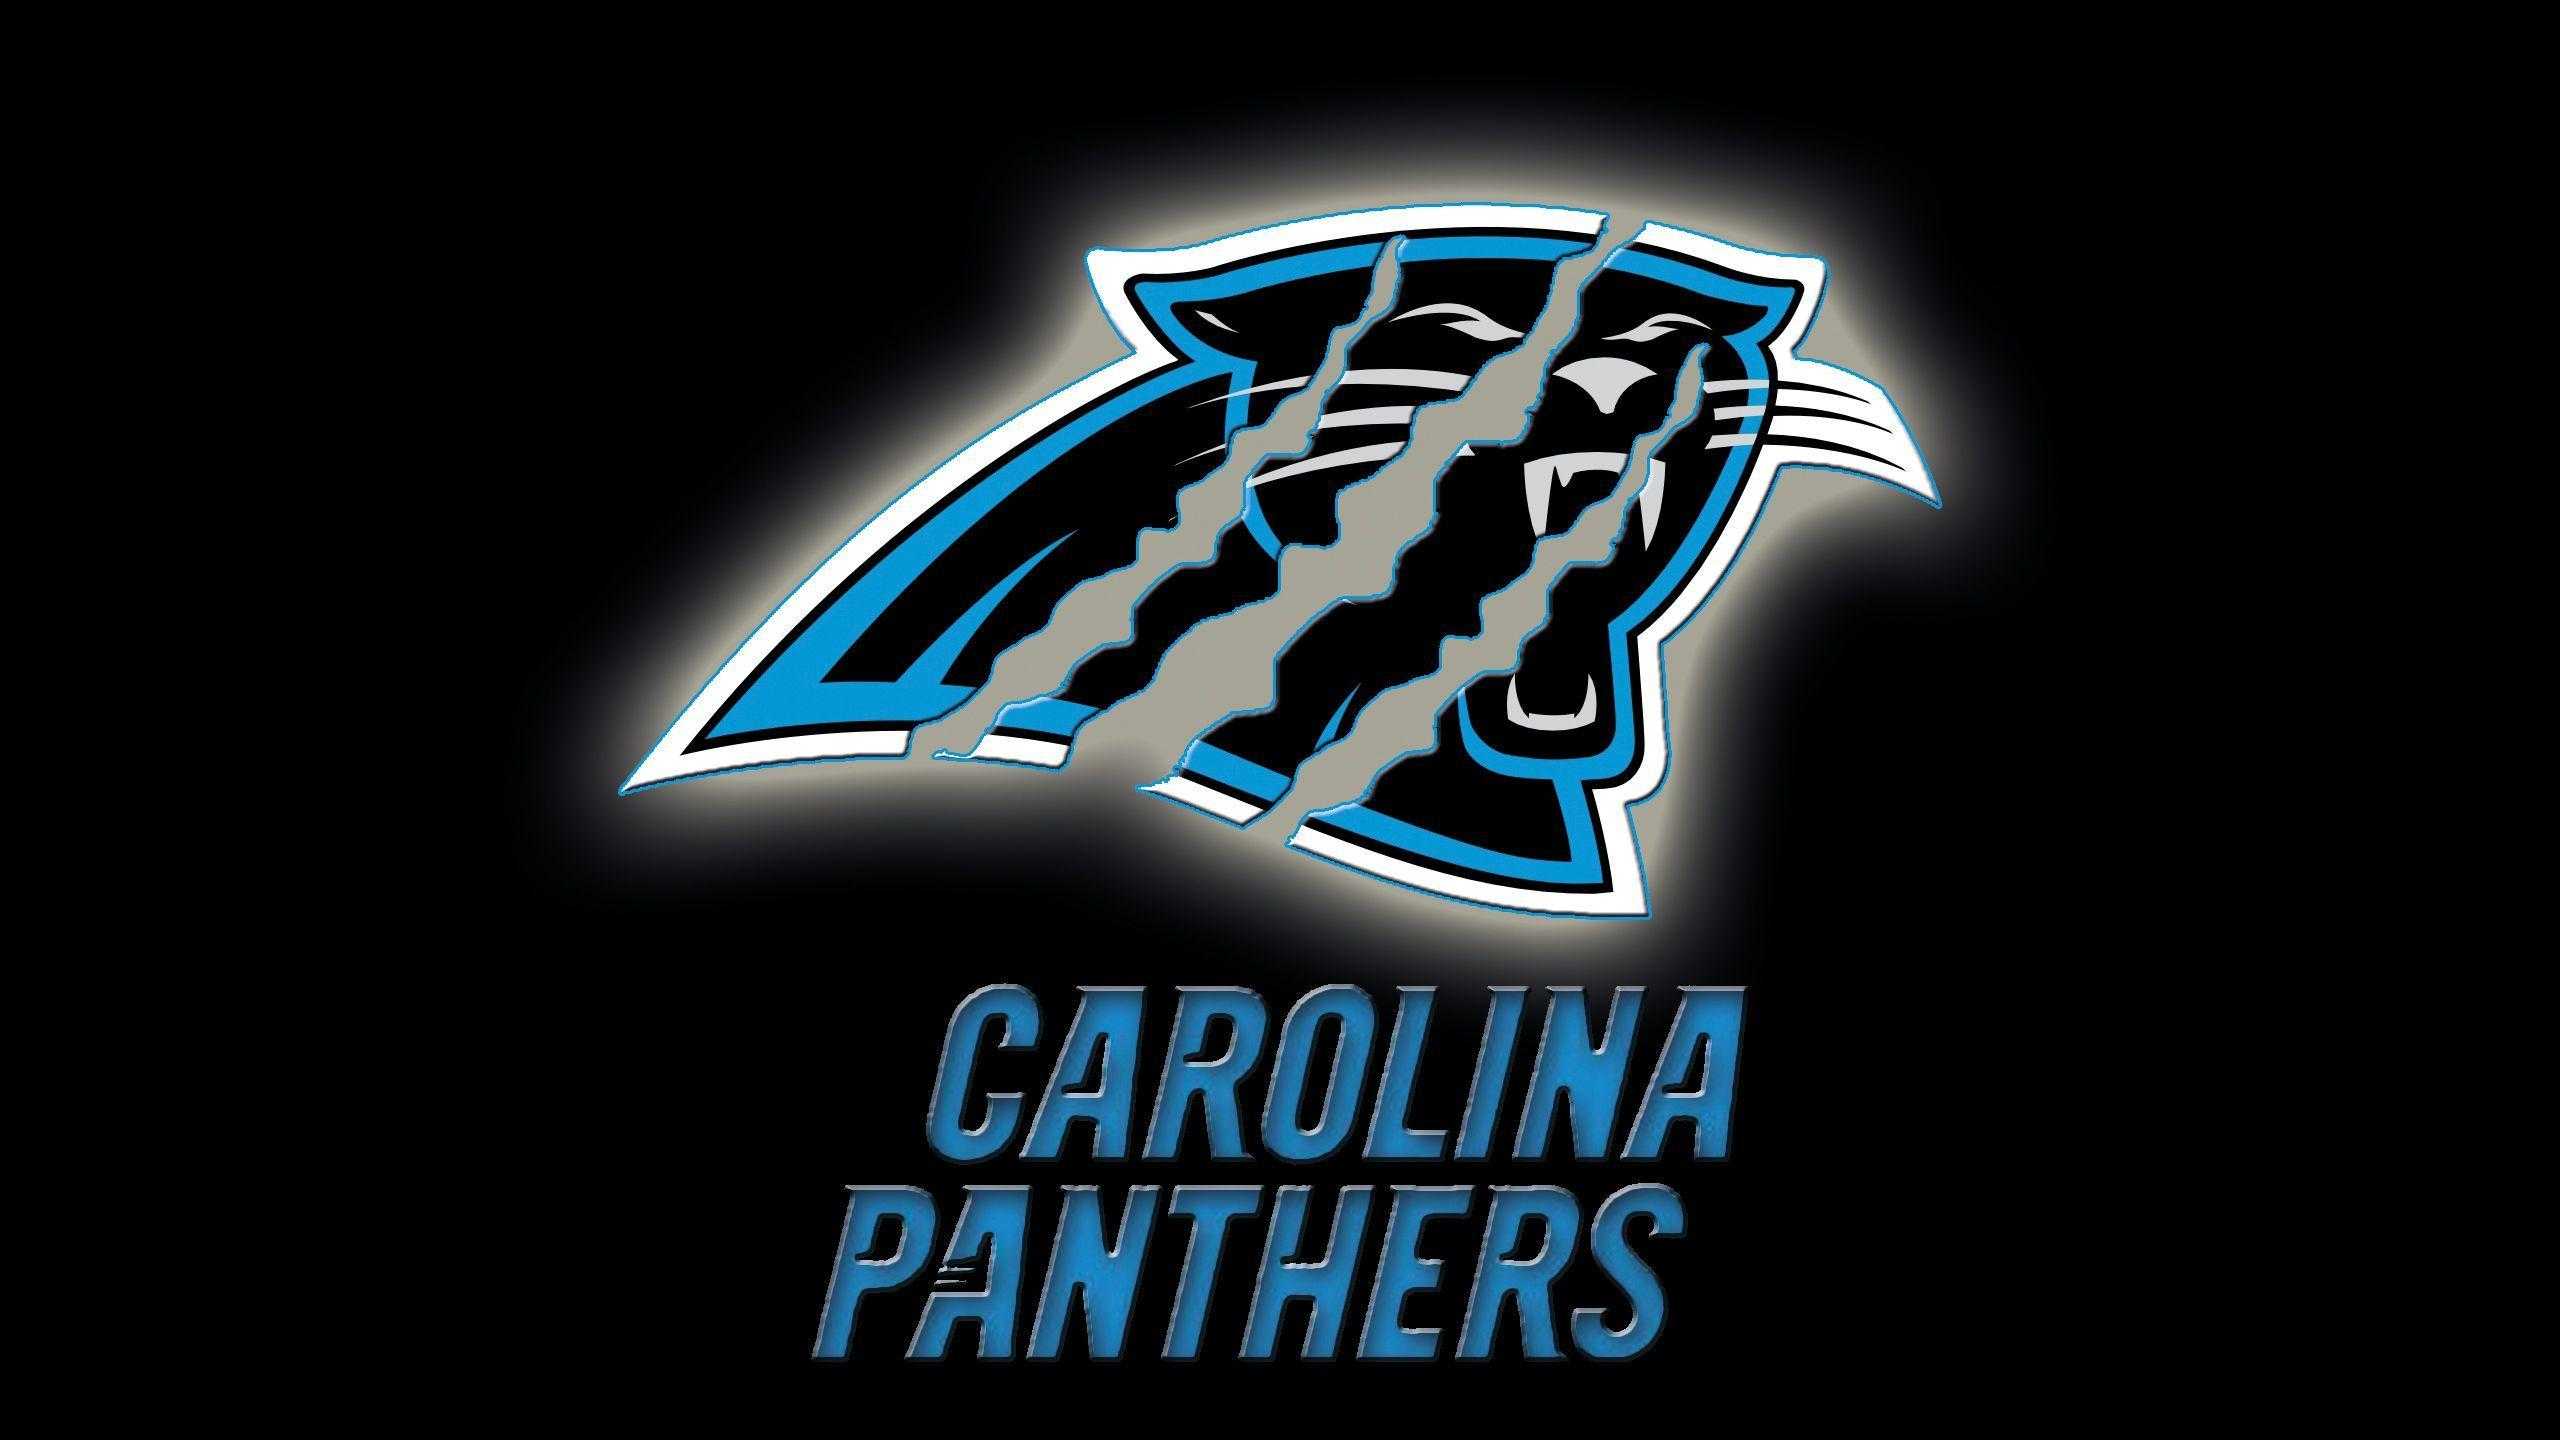 Carolina Panthers Wallpaper Logo For Desktop HD Image